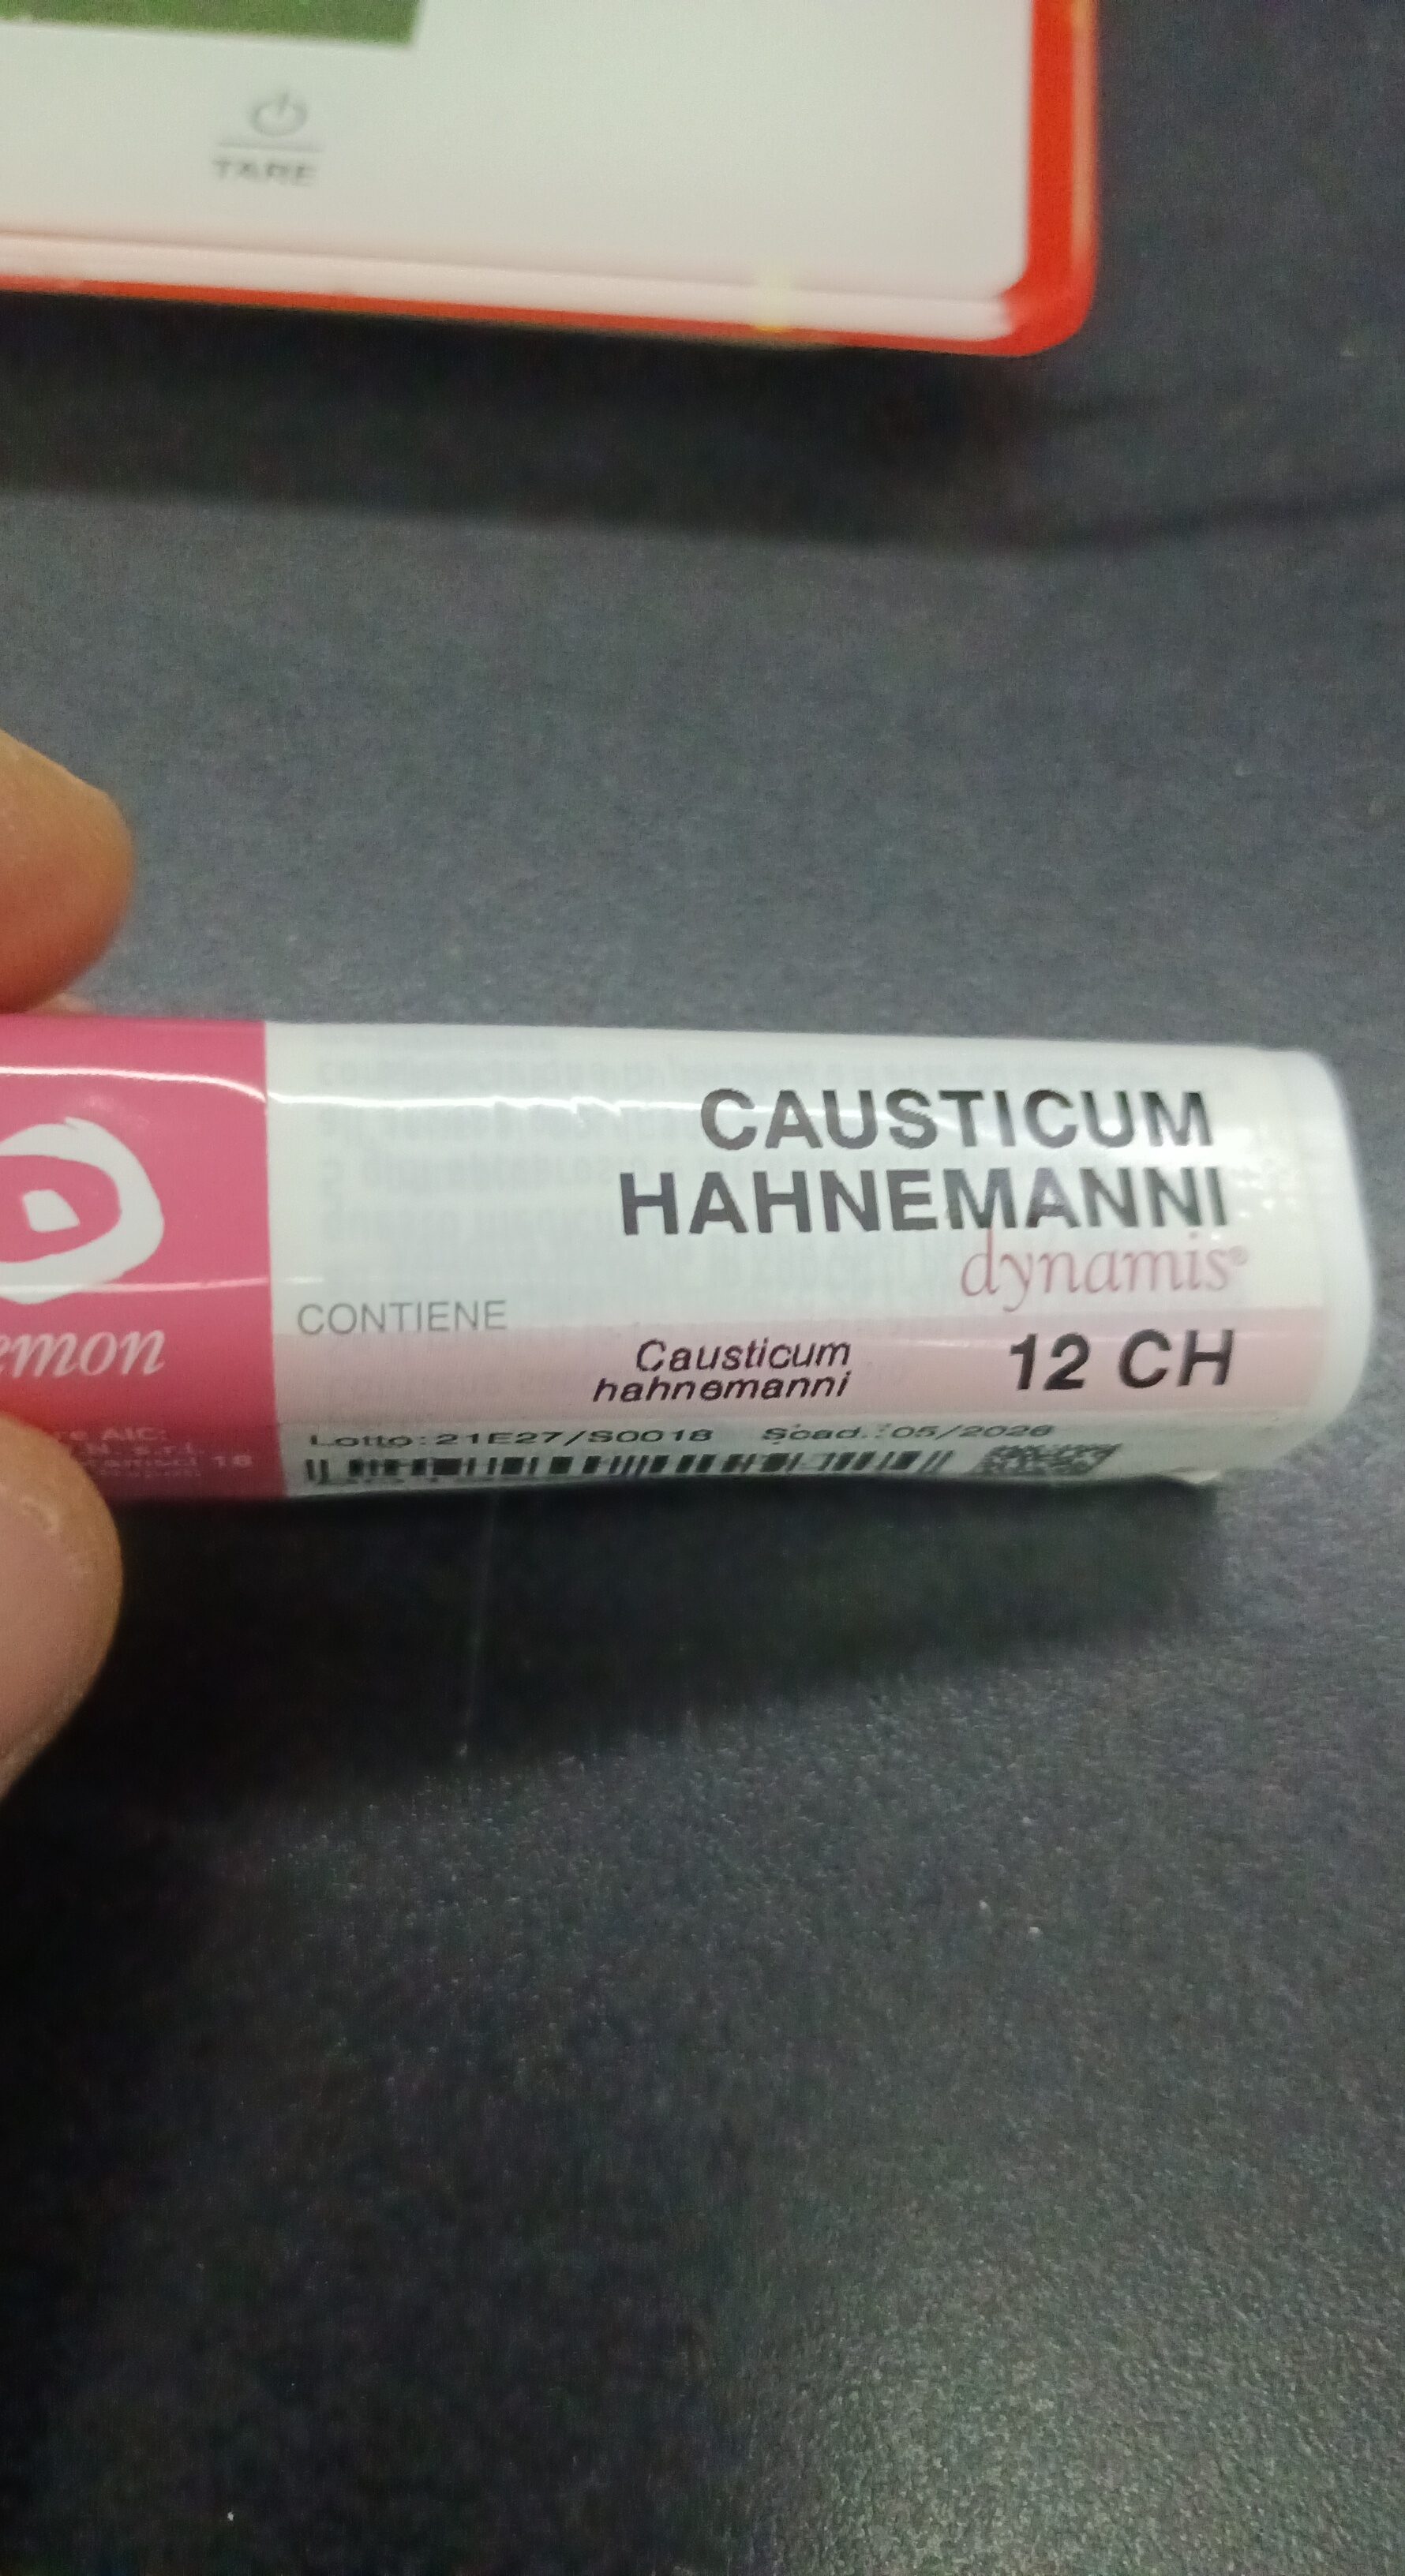 CAUsticum hahnemanni 12CH - Produit - it